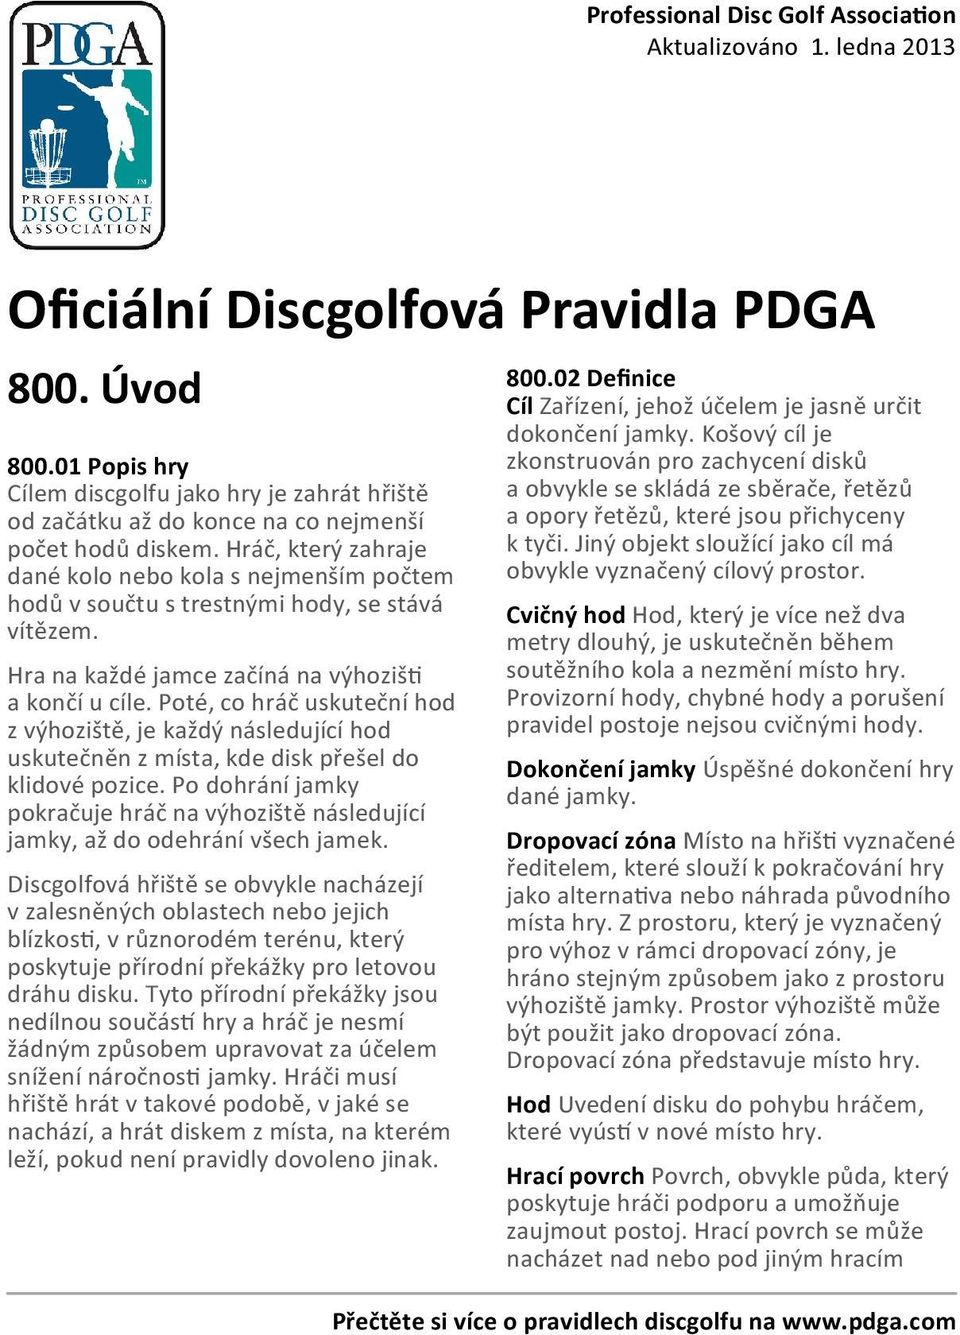 Oficiální pravidla discgolfu - PDF Stažení zdarma